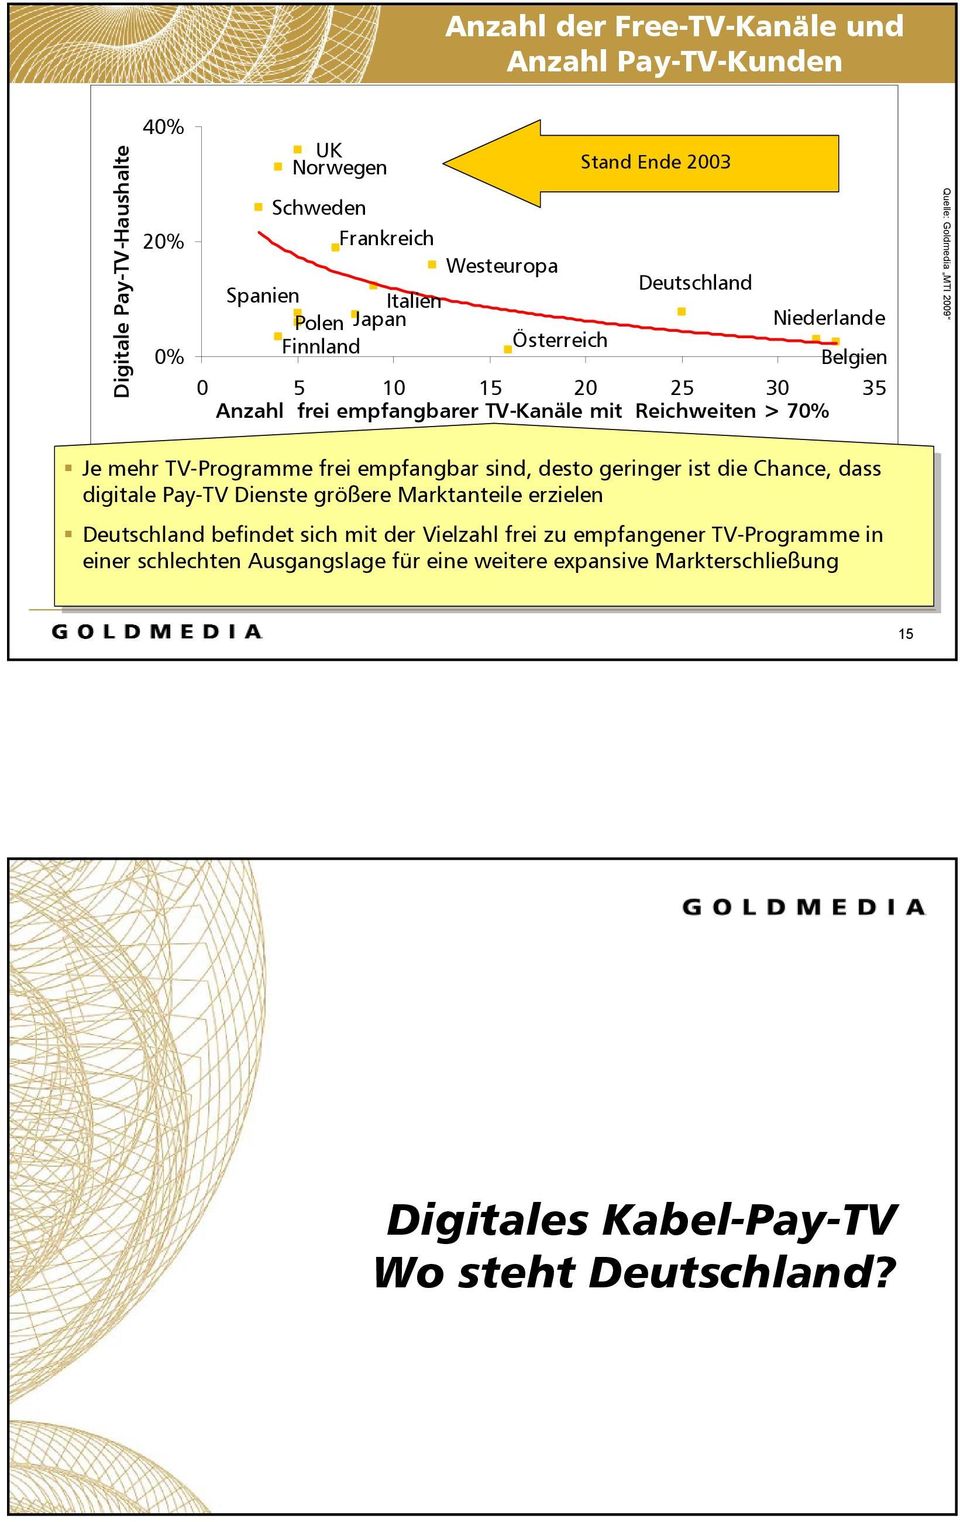 frei empfangbar sind, desto geringer ist die Chance, dass digitale Pay-TV Dienste größere Marktanteile erzielen befindet sich mit der Vielzahl